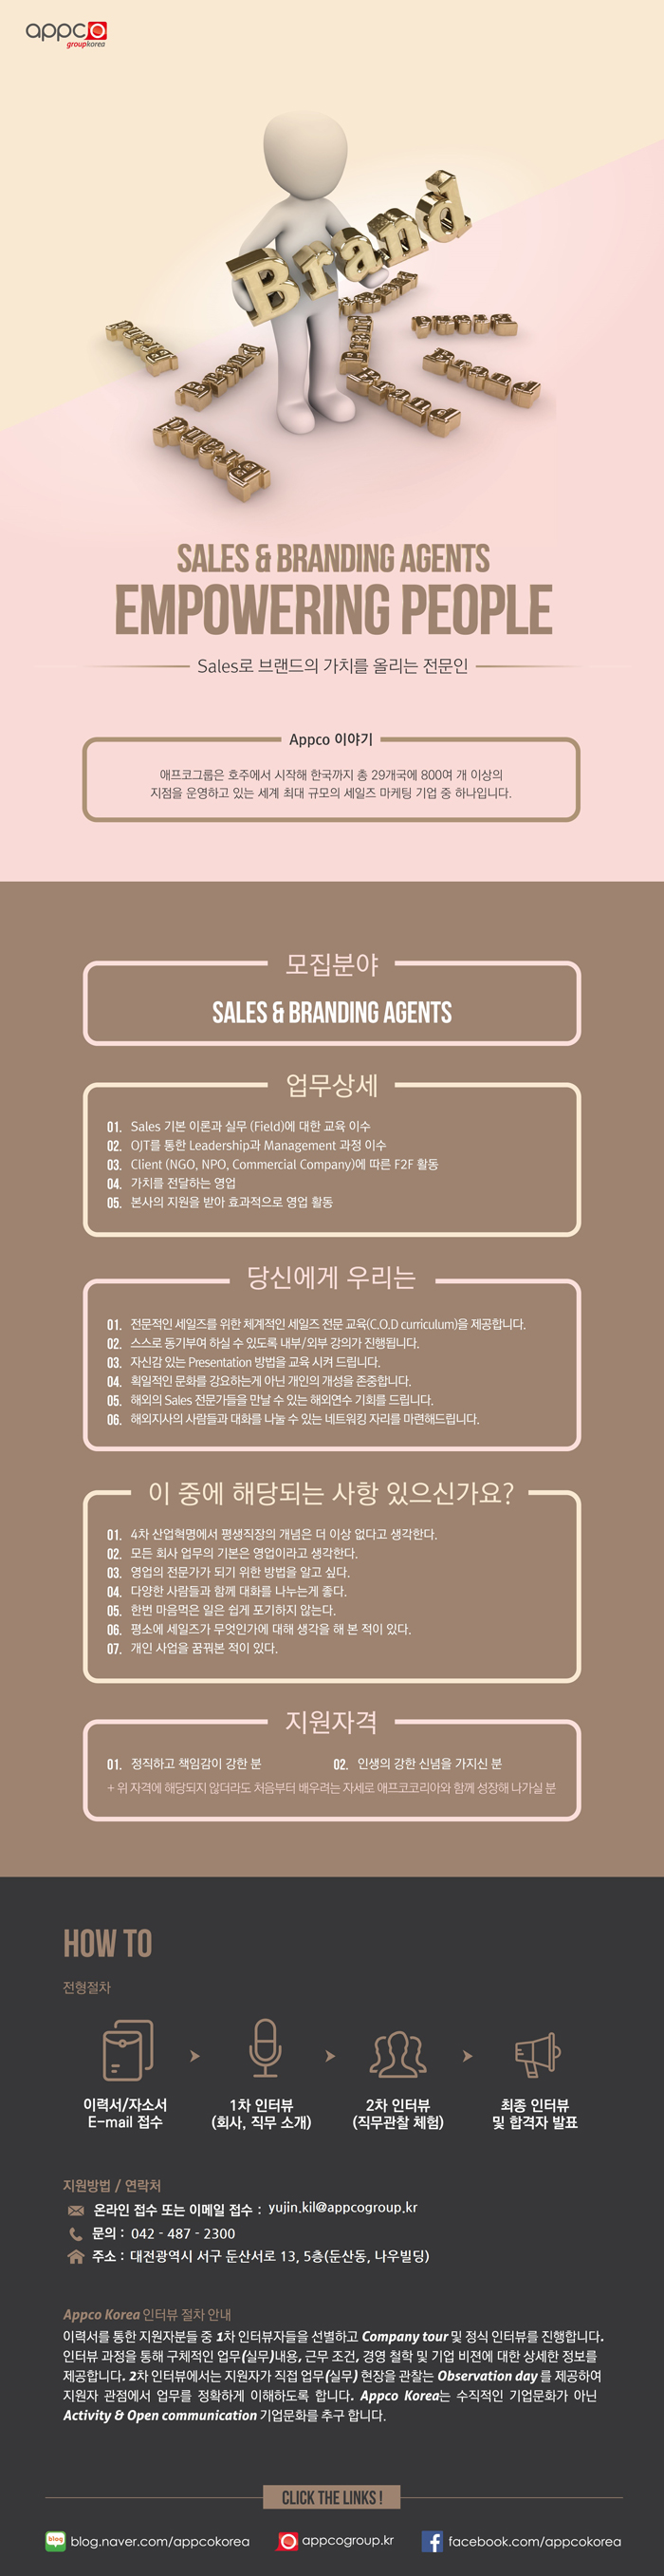 [외국계/대전지점] APPCO KOREA Sales & Branding Agents 모집